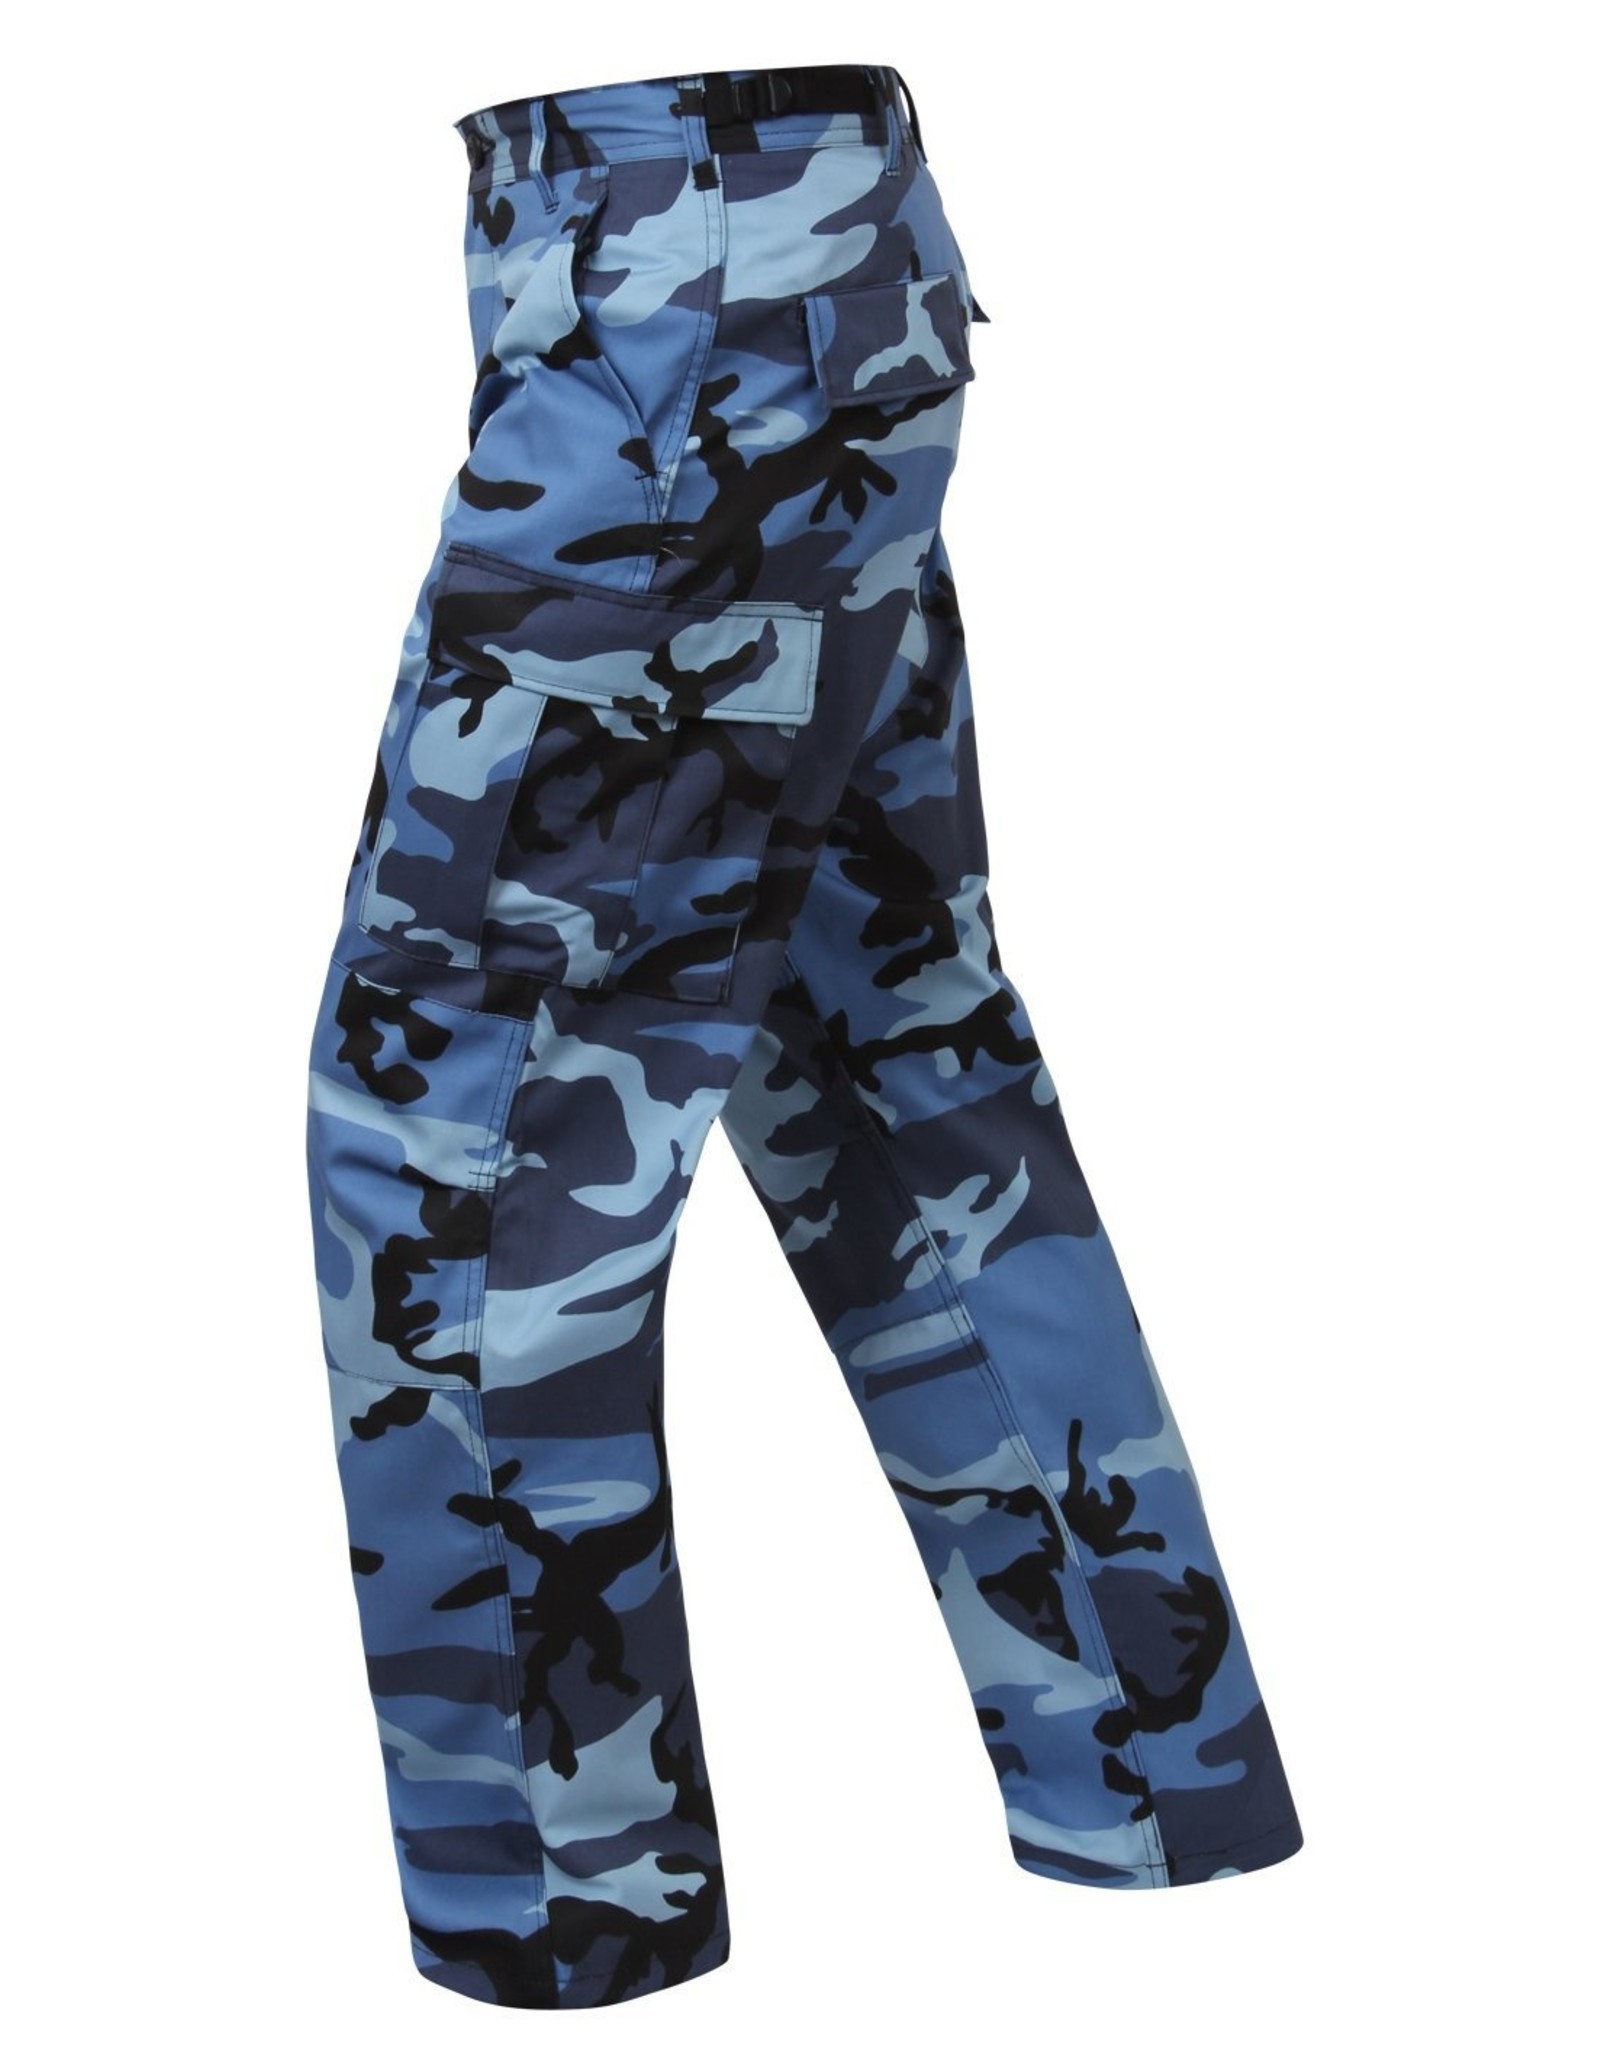 Rothco Two-Tone UV Purple/Urban Camo BDU Pants - Army Supply Store